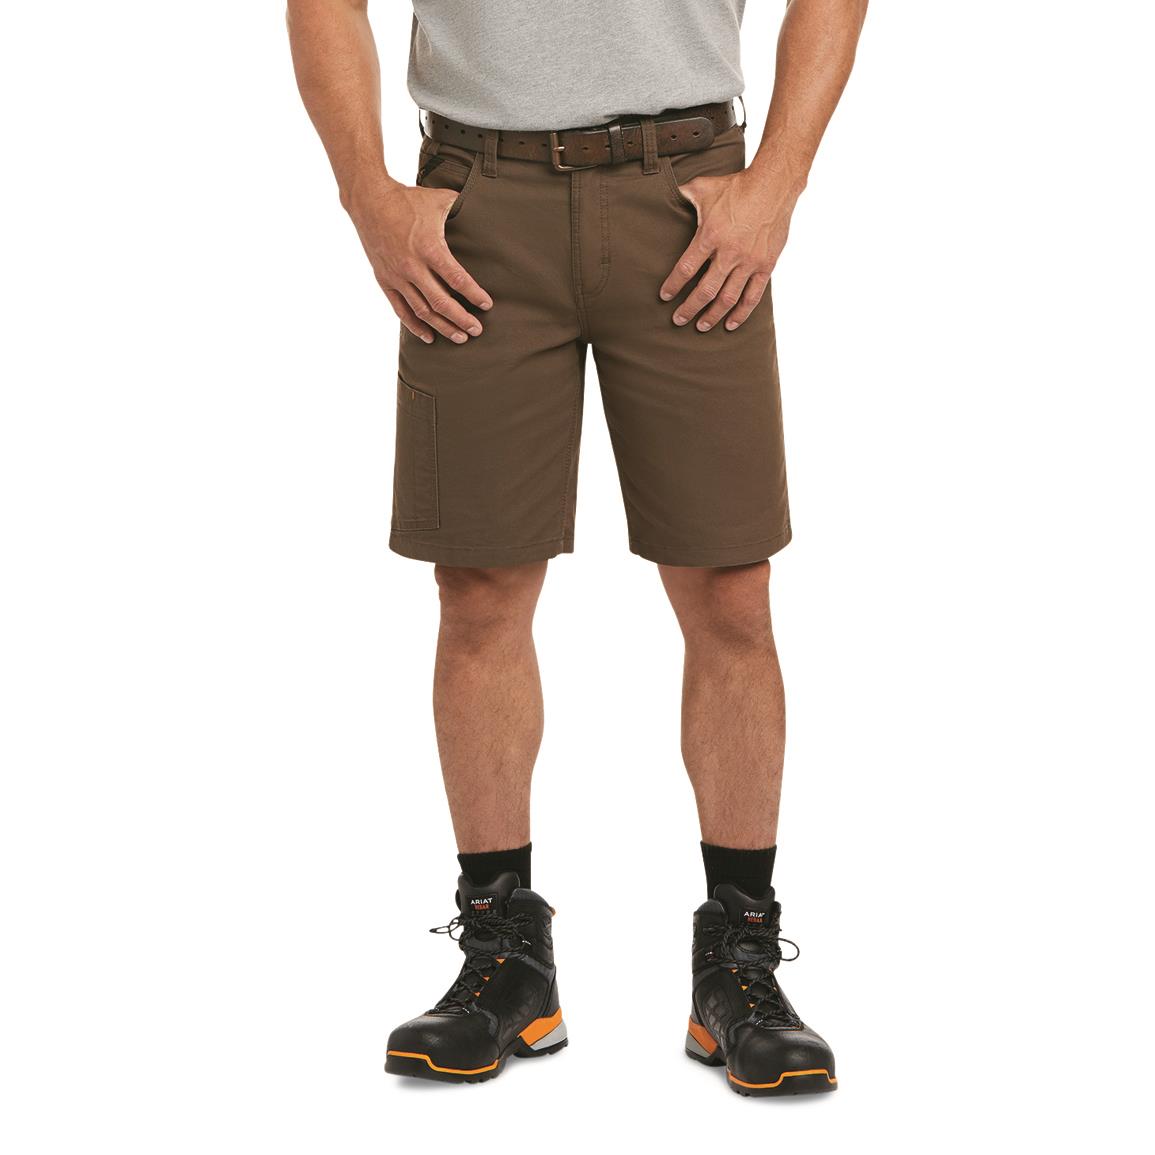 Ariat Men's Rebar Relaxed Made Tough Durastretch Shorts, Wren